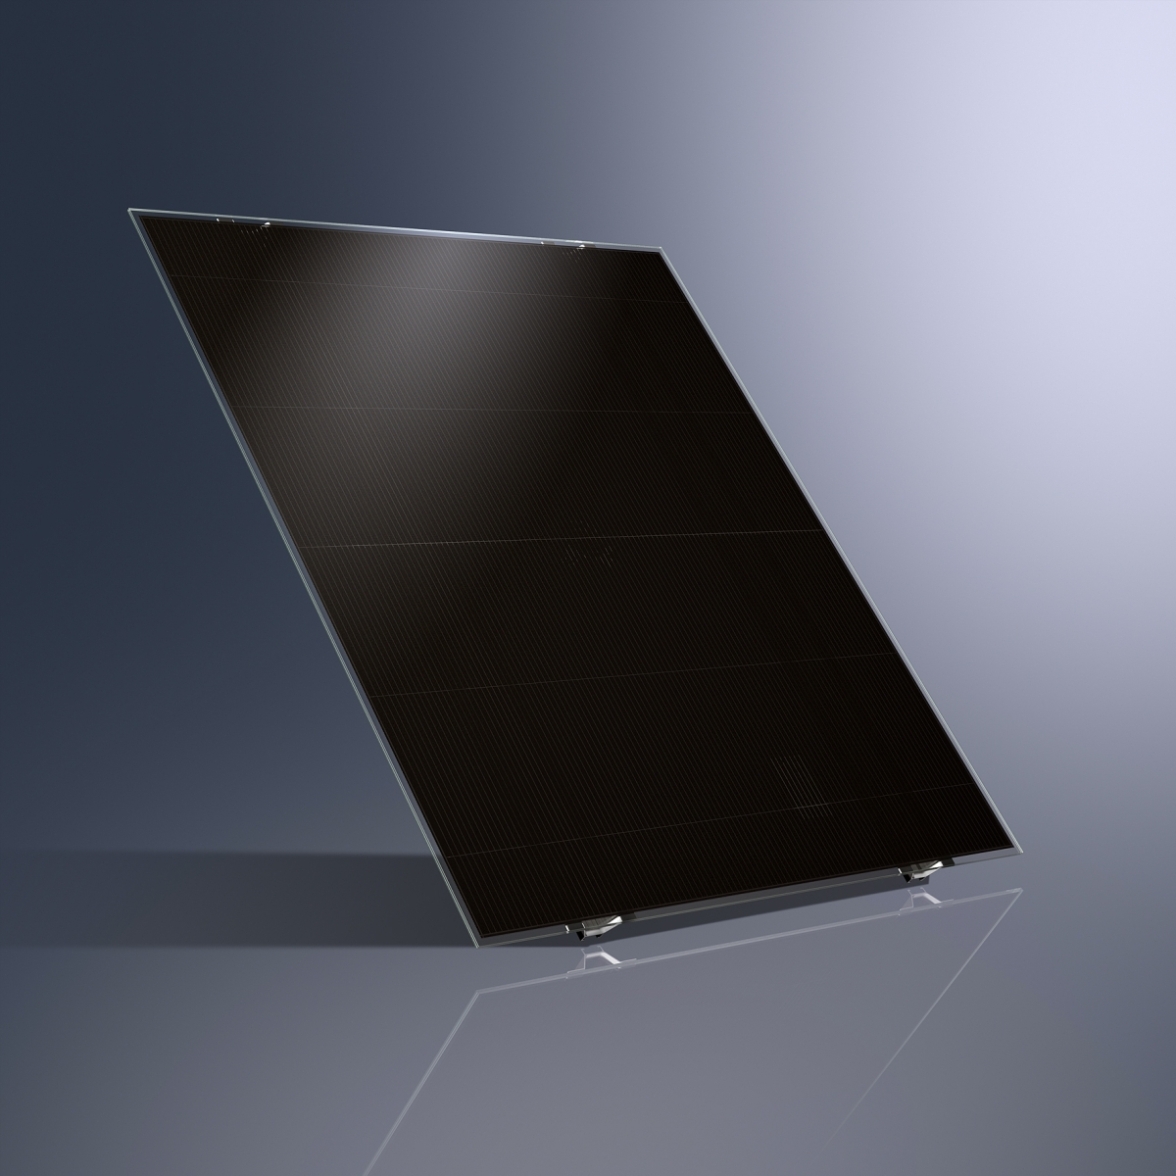 Tenkovrstvý fotovoltaický modul Schüco MPE ze série BL (Blackline Laminate)